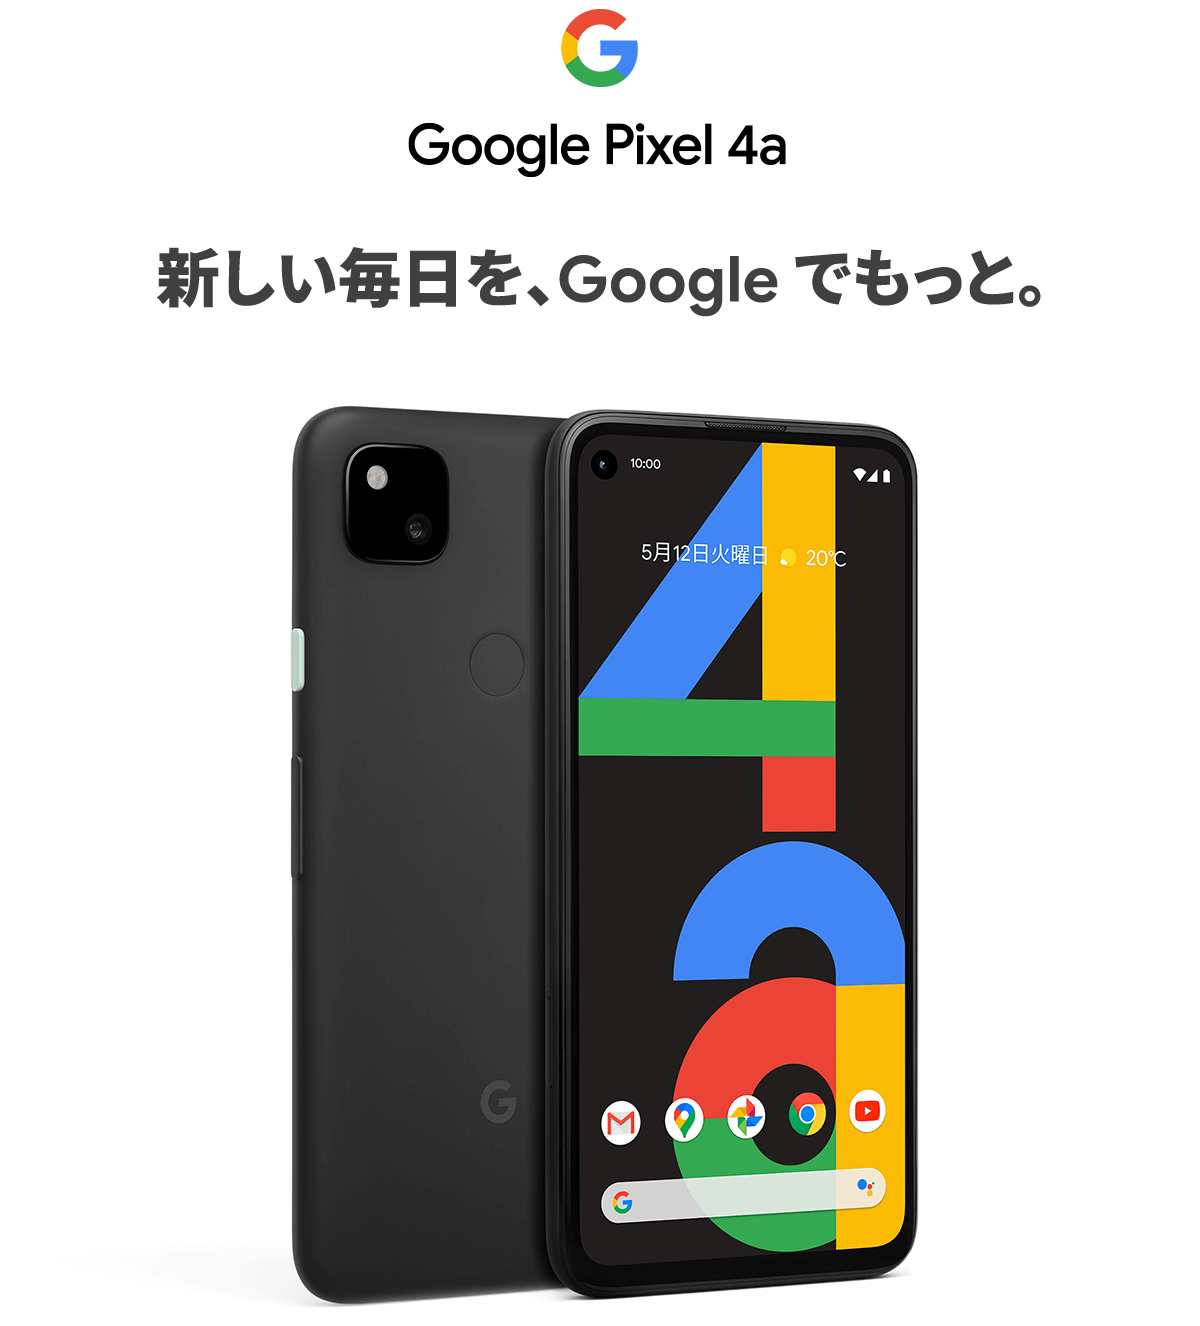 ソフトバンク、Google Pixel 4aを発売 | phablet.jp (ファブレット.jp)